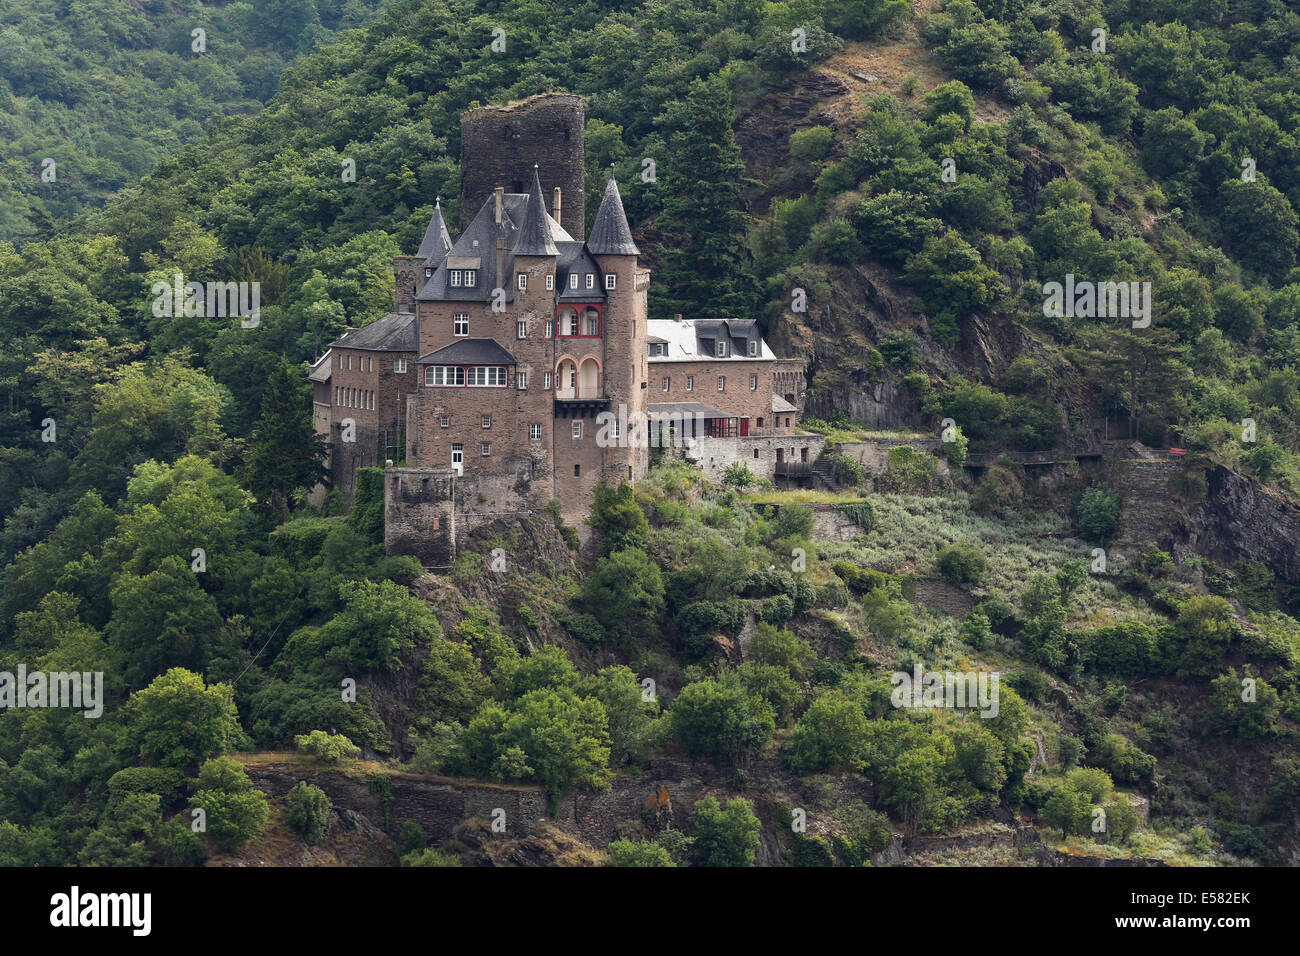 Burh Katz Castle, St. Goarshausen, Patrimonio Mundial de la Unesco, el valle del Rin central superior, Renania-Palatinado, Alemania Foto de stock